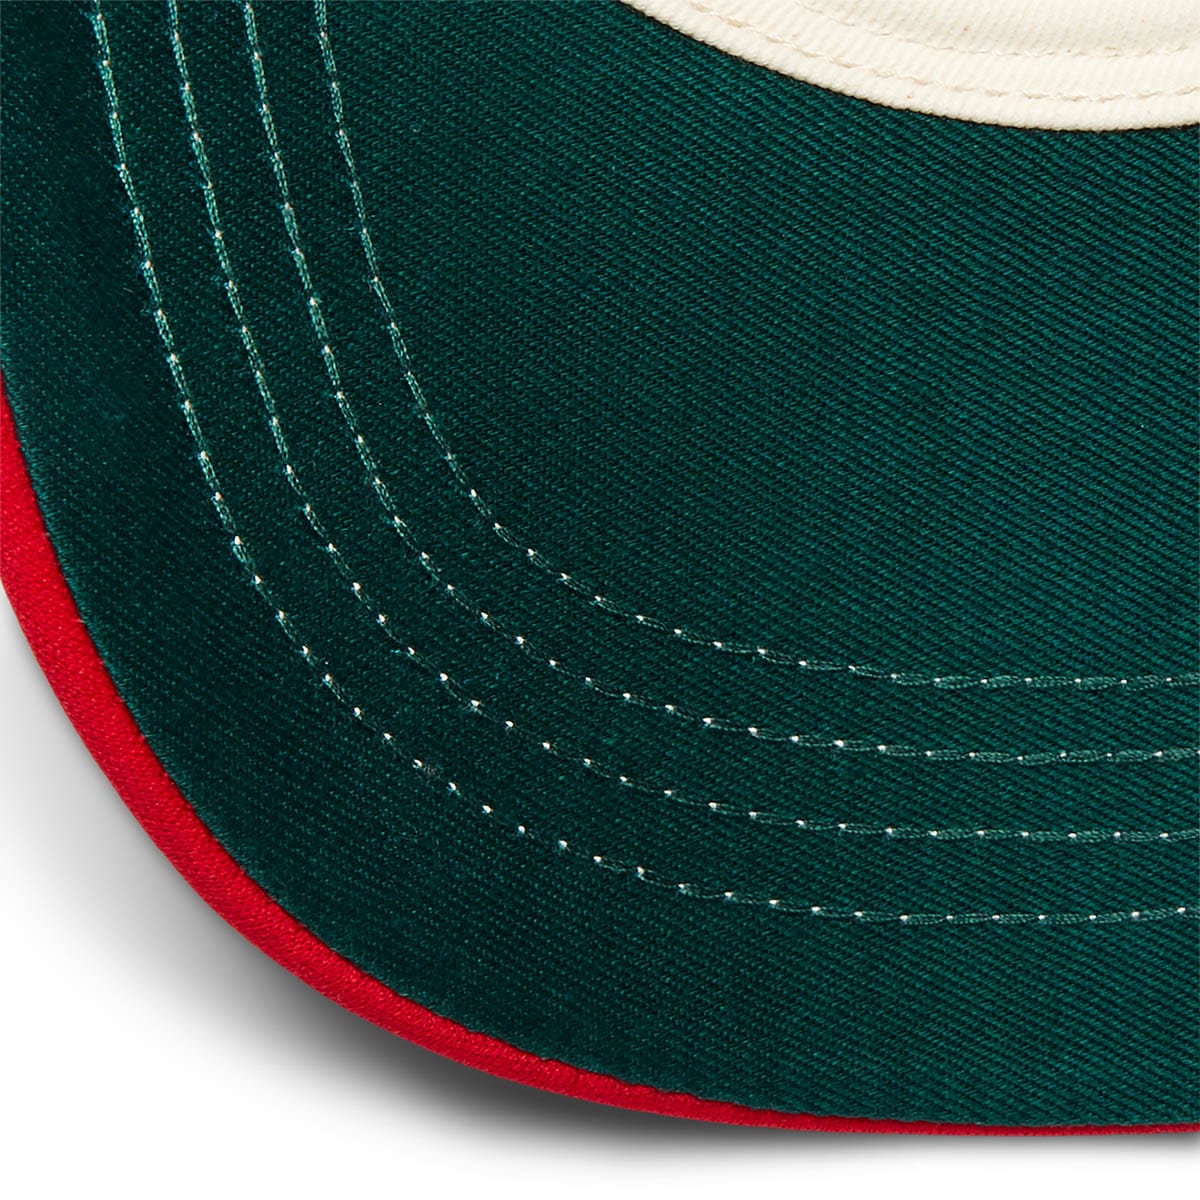 RRL Headwear RED / O/S FOAM TRUCKER CAP